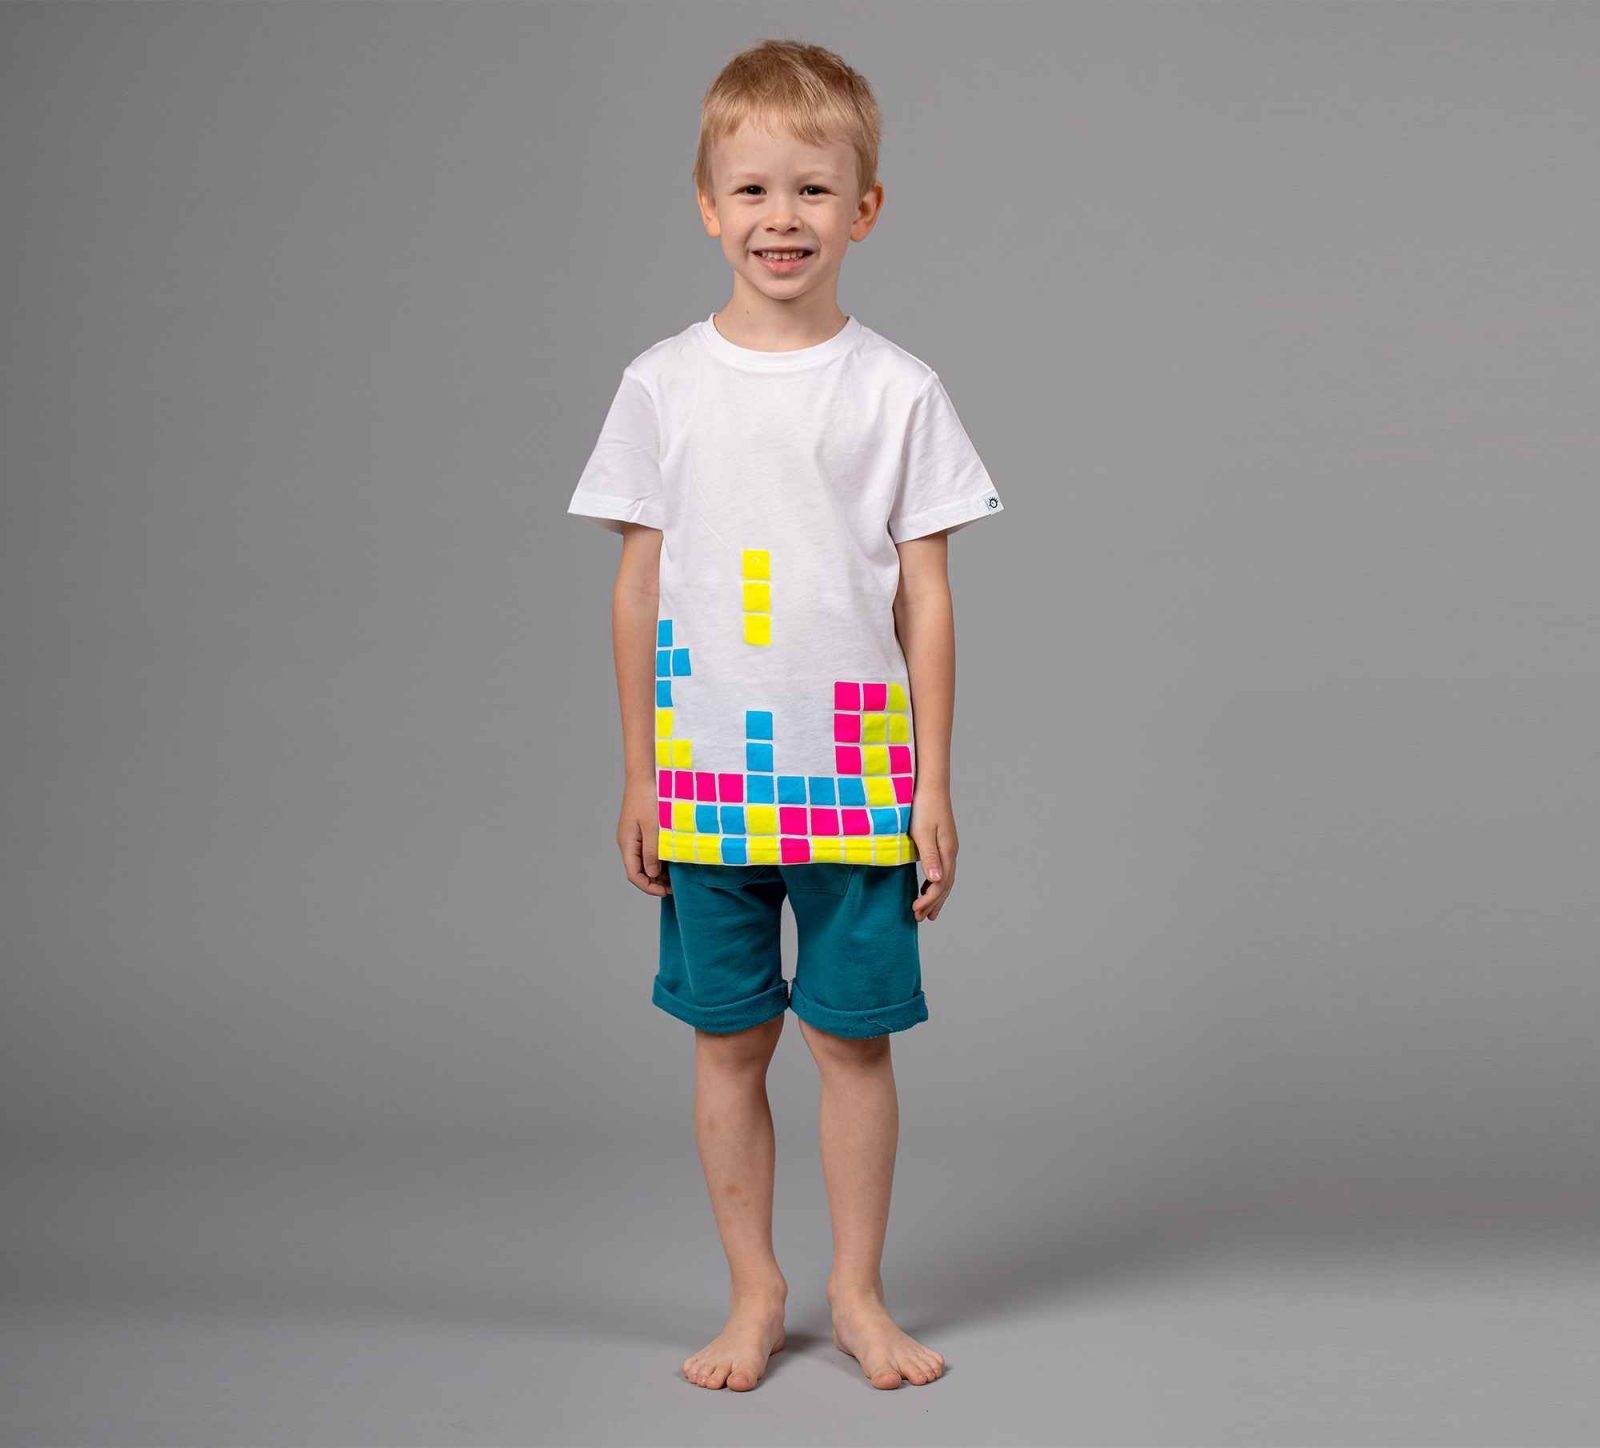 tetris-tshirt-boy-3